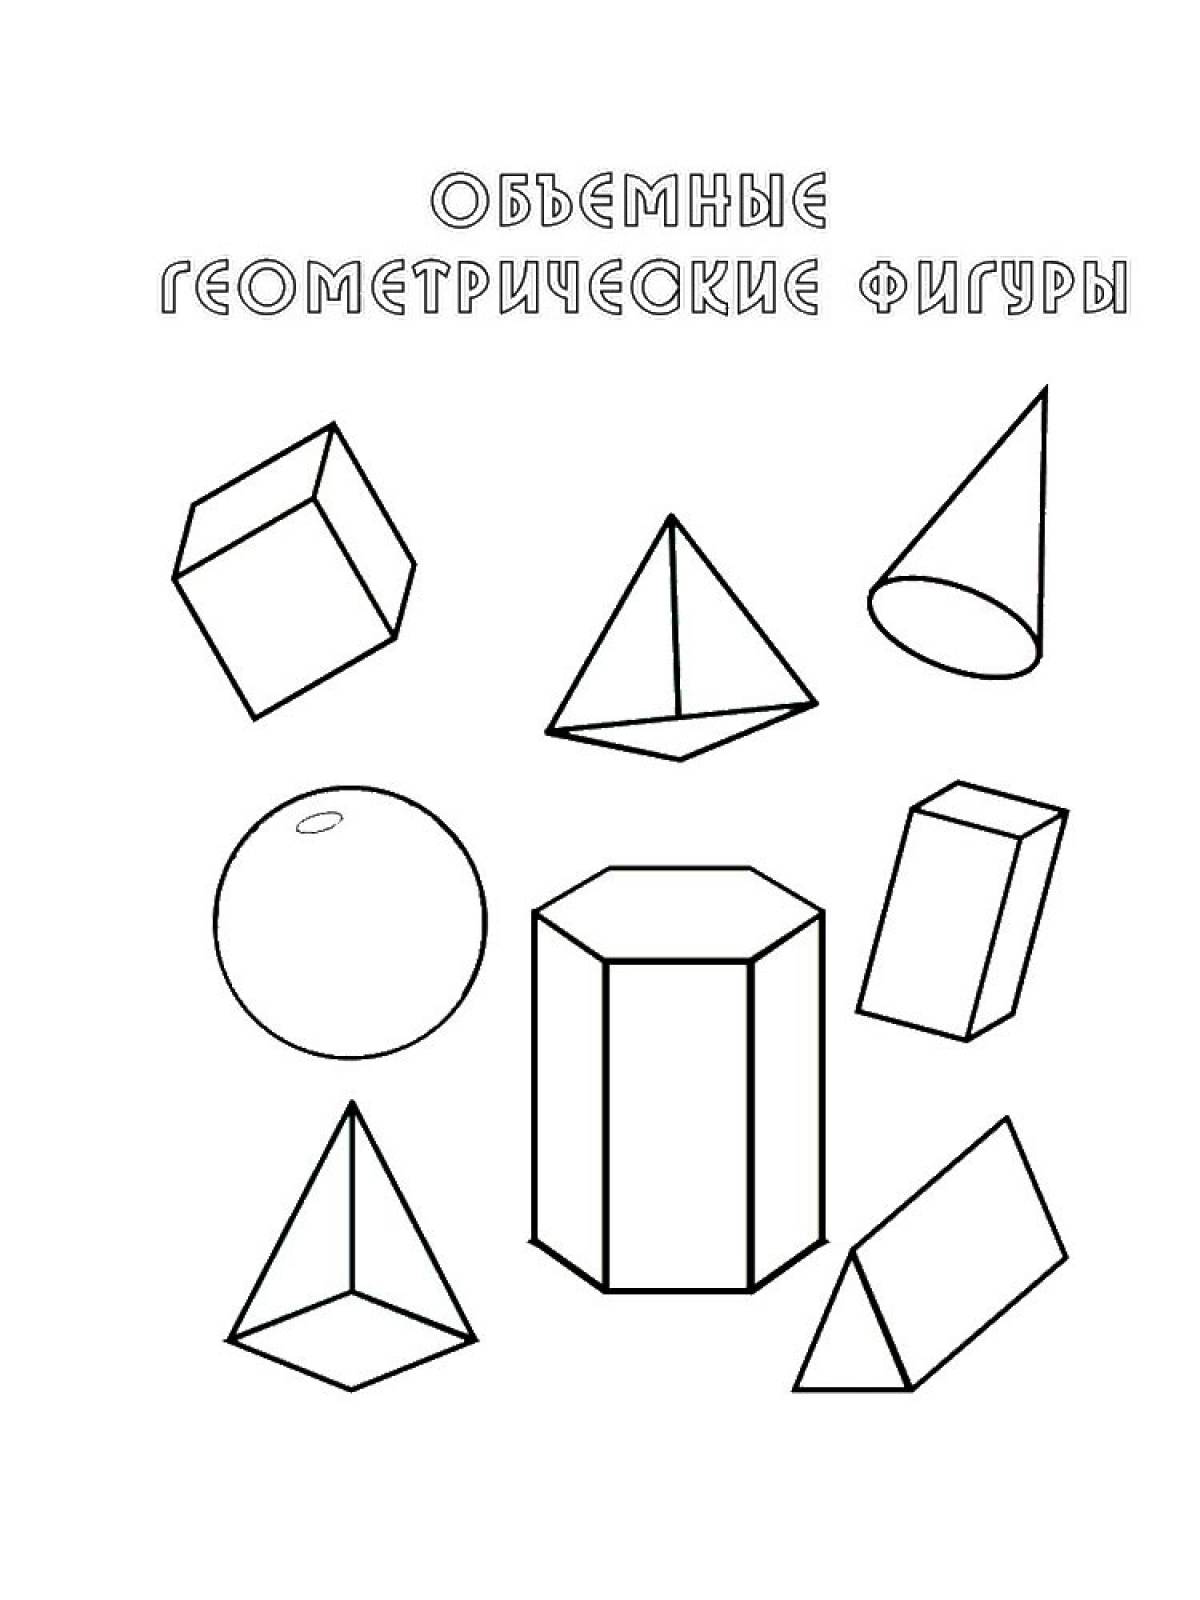 Geometric shapes 10